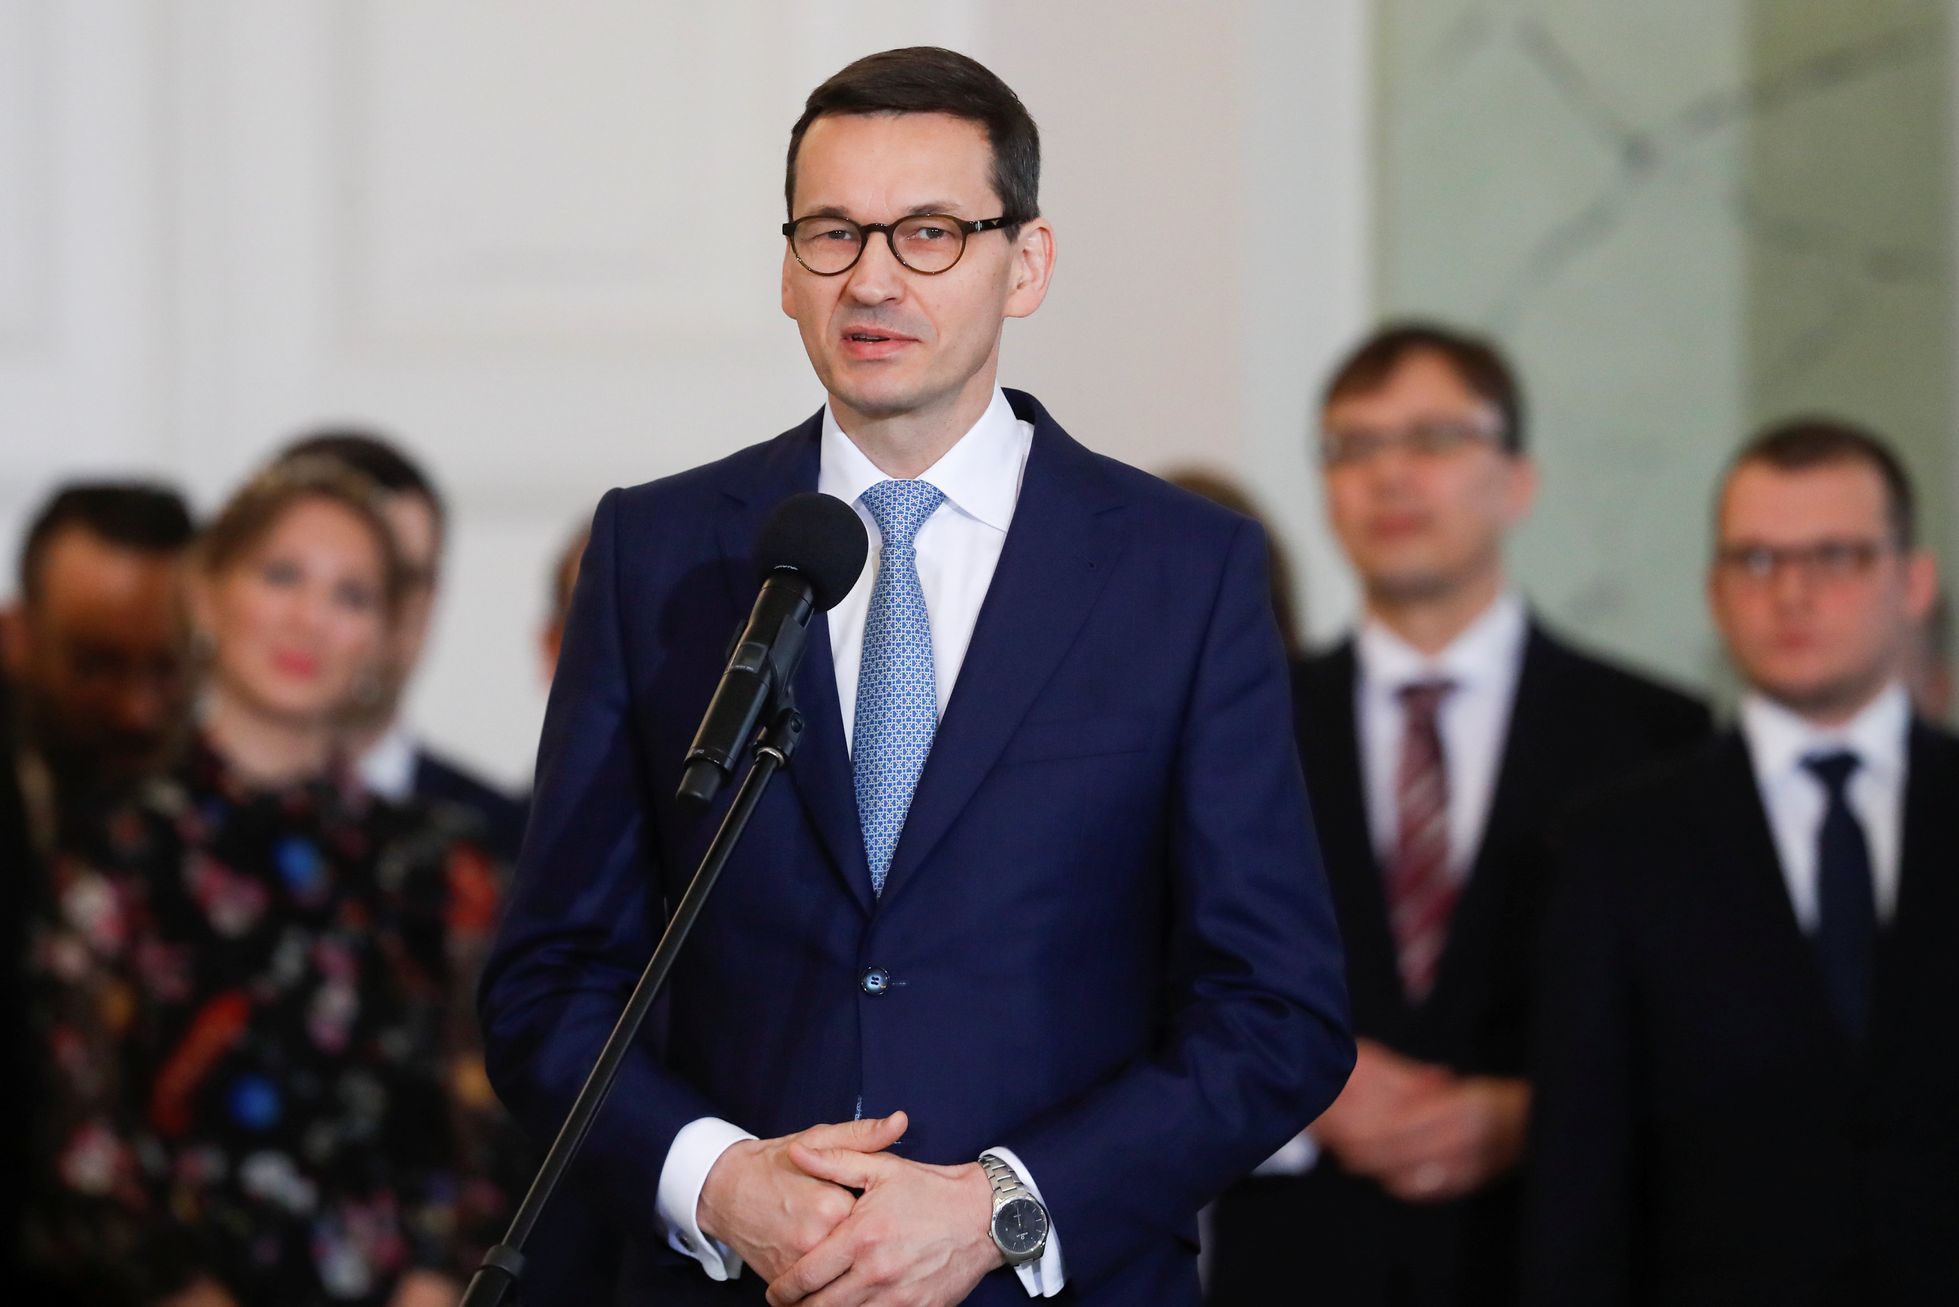 Spor v EU se vyhrocuje.  Polsko si zahrává s ohněm, může dostat sankce, hrozí politici